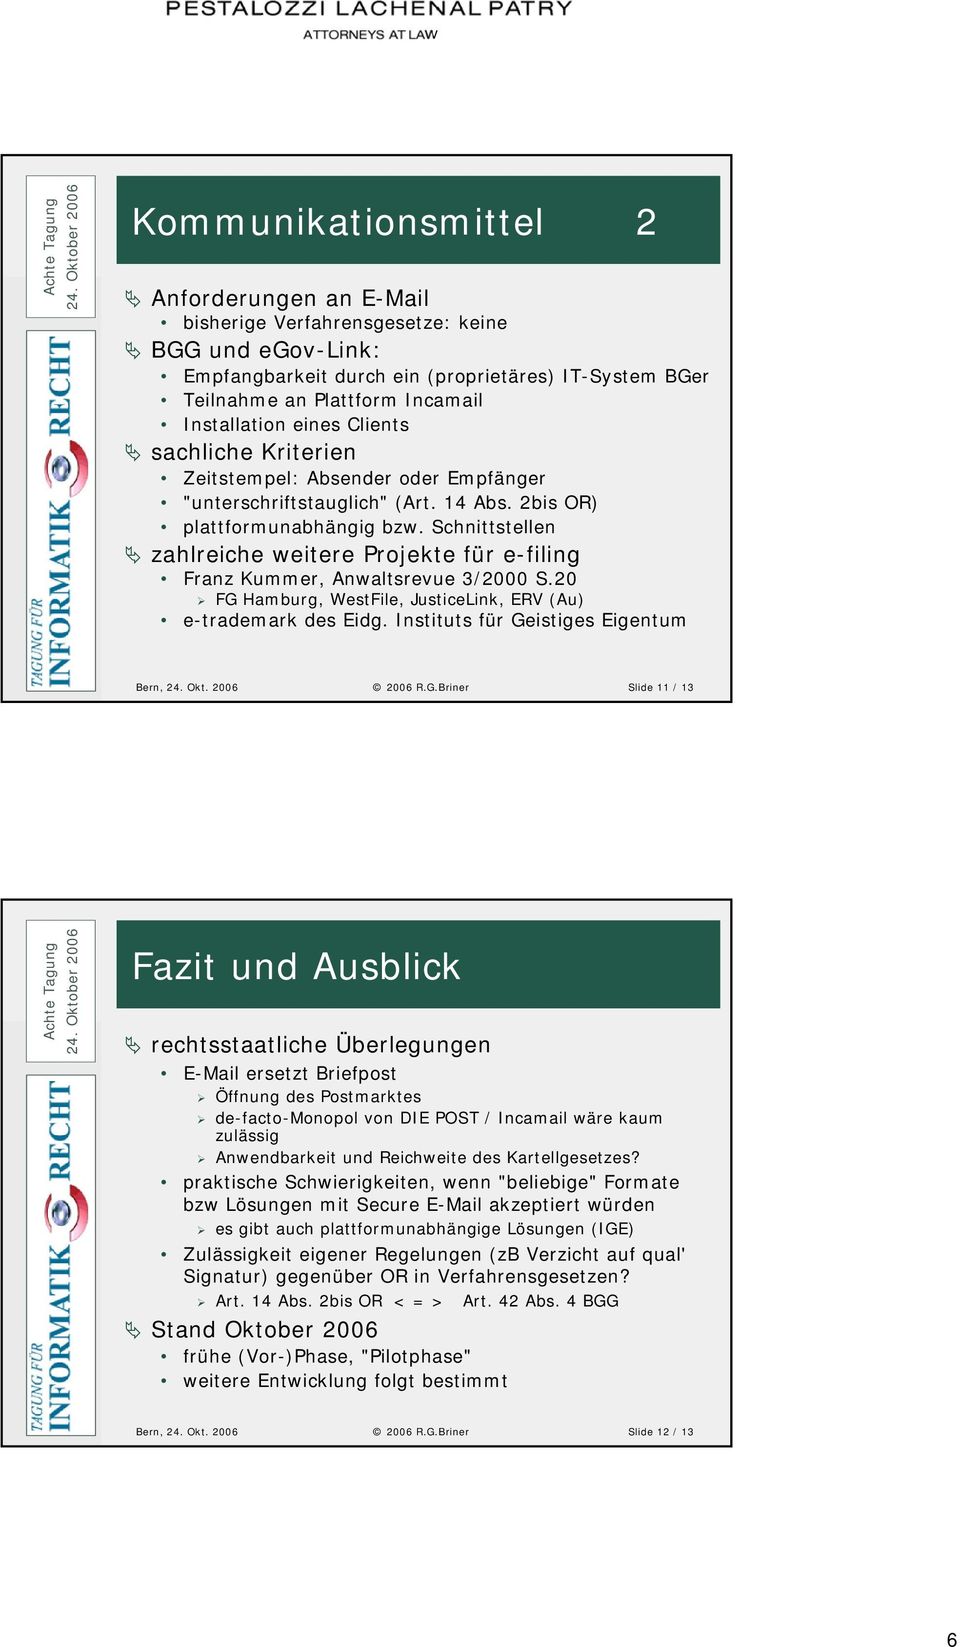 Schnittstellen zahlreiche weitere Projekte für e-filing Franz Kummer, Anwaltsrevue 3/2000 S.20 FG Hamburg, WestFile, JusticeLink, ERV (Au) e-trademark des Eidg.